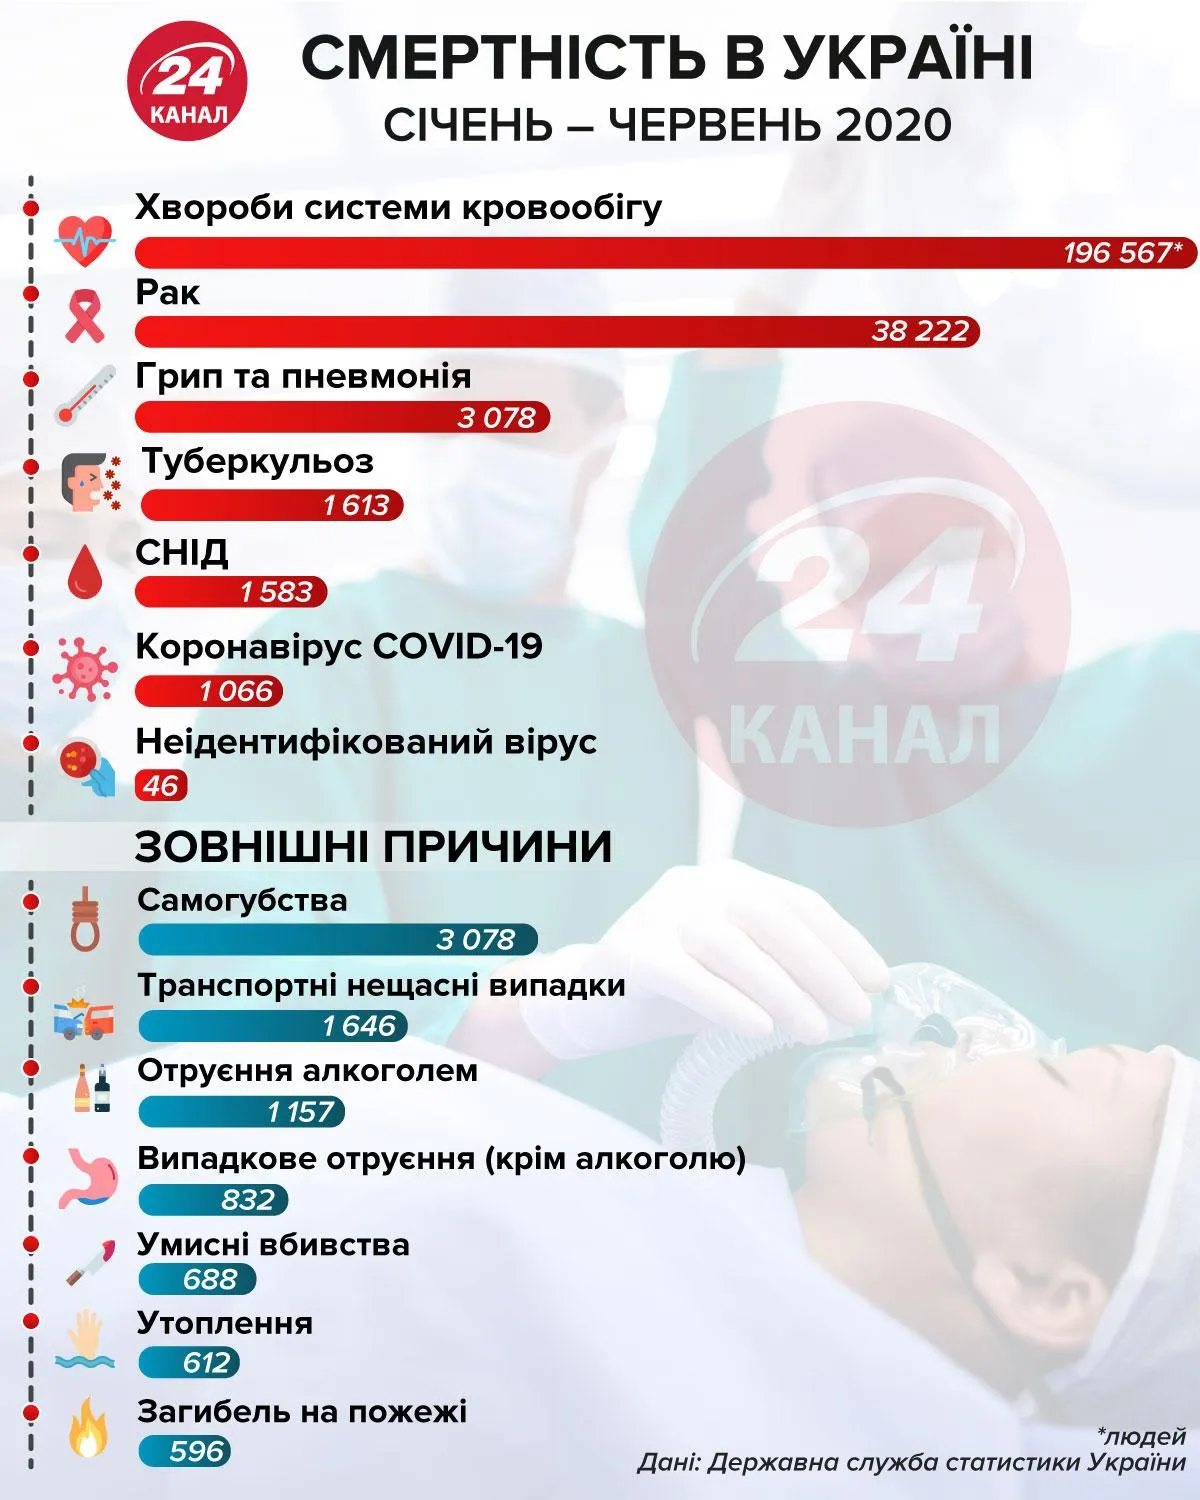 Смертность Украины за январь - июнь 2020 / Инфографика 24 канала